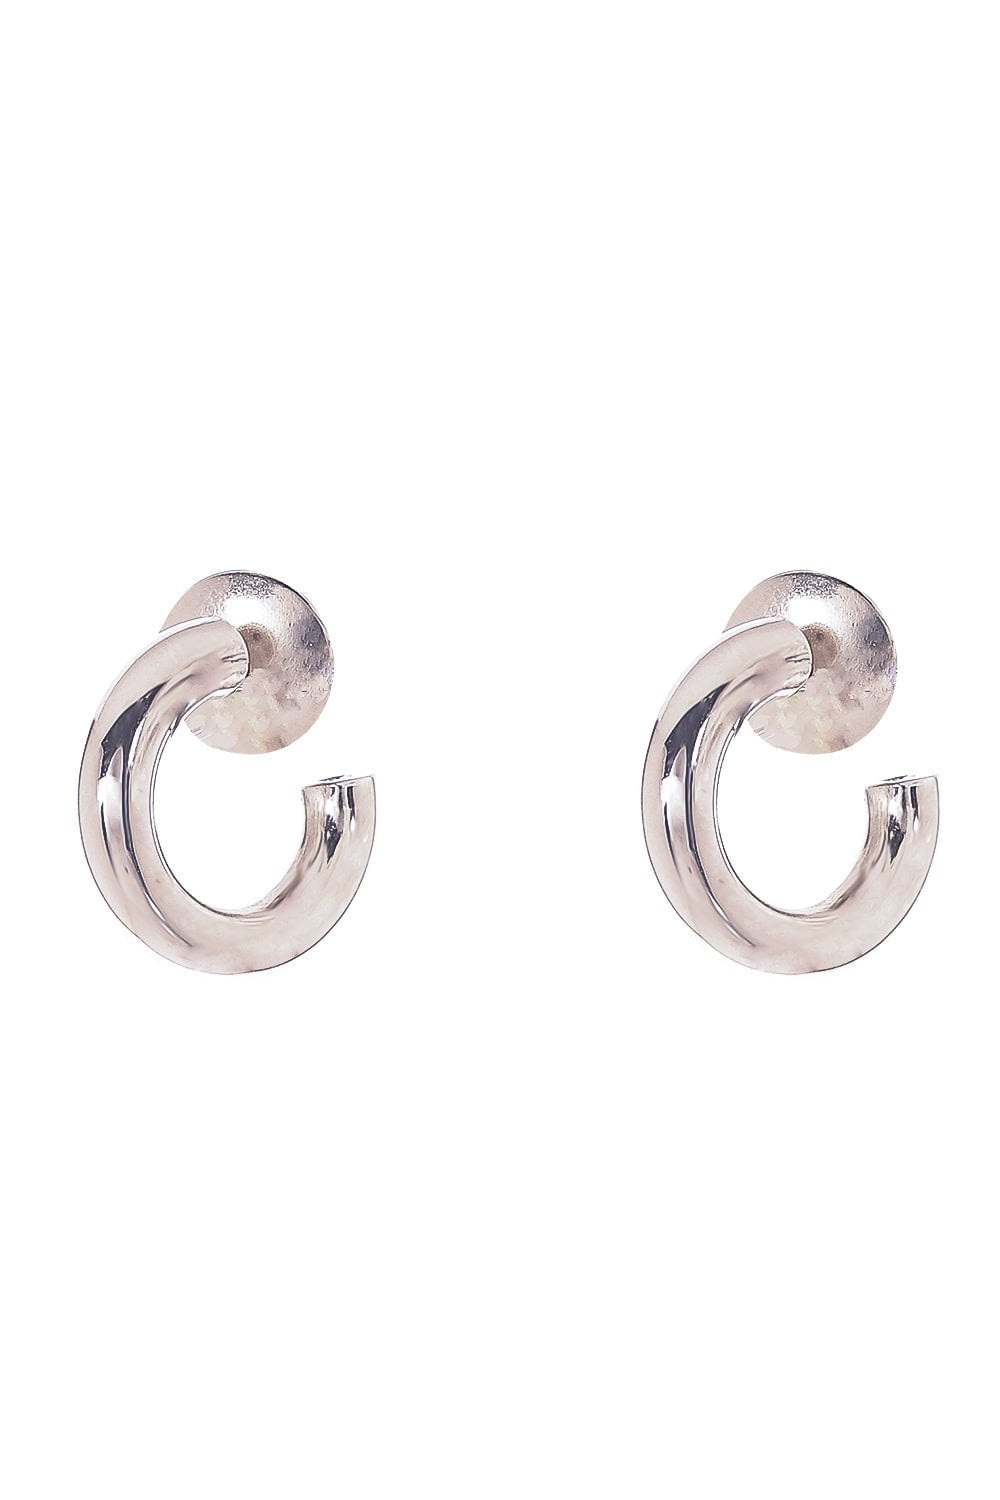 SIDNEY GARBER-Mallory Hoop Earrings - 1.8cm-WHITE GOLD